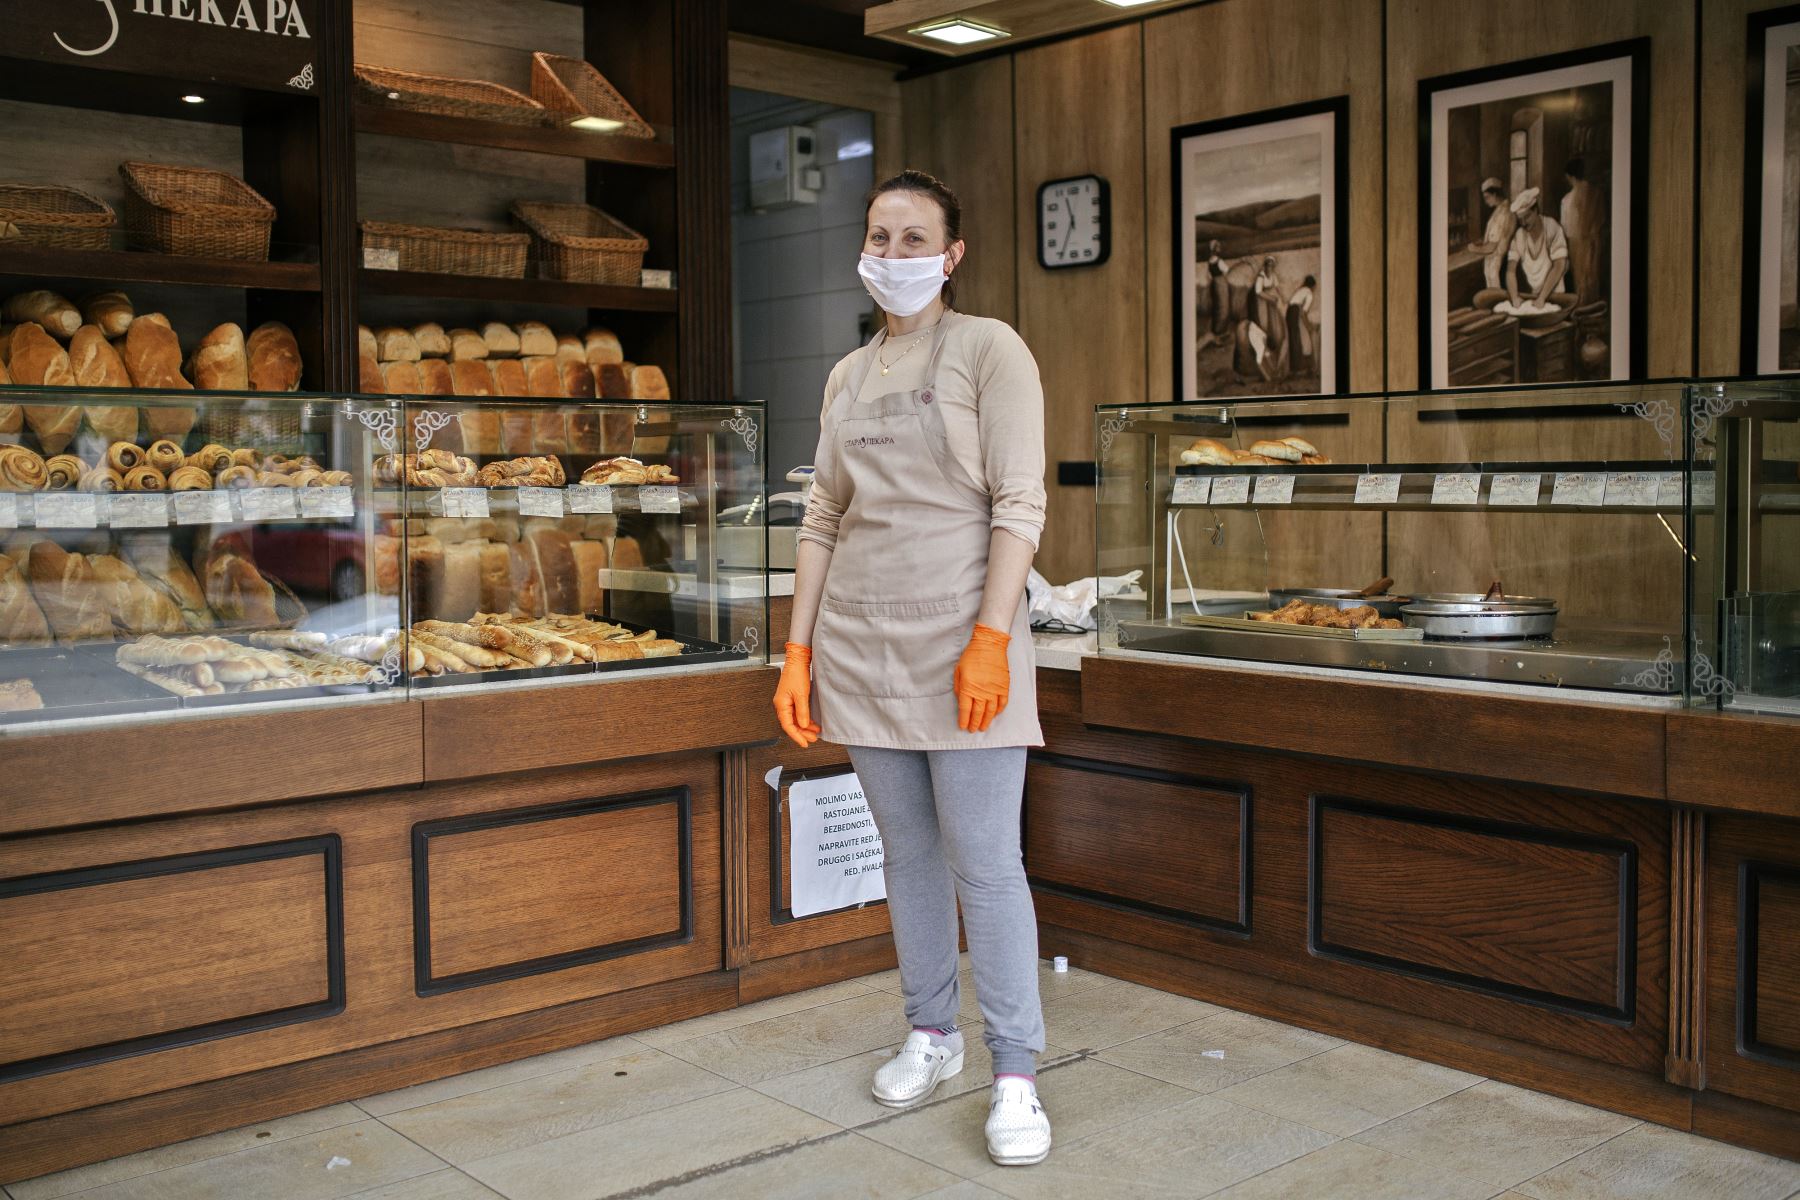 Javorka Lazic, de 35 años, panadero, posa para una foto en Mladenovac, Serbia, el 21 de abril de 2020 durante la pandemia del coronavirus COVID-19. Foto: AFP